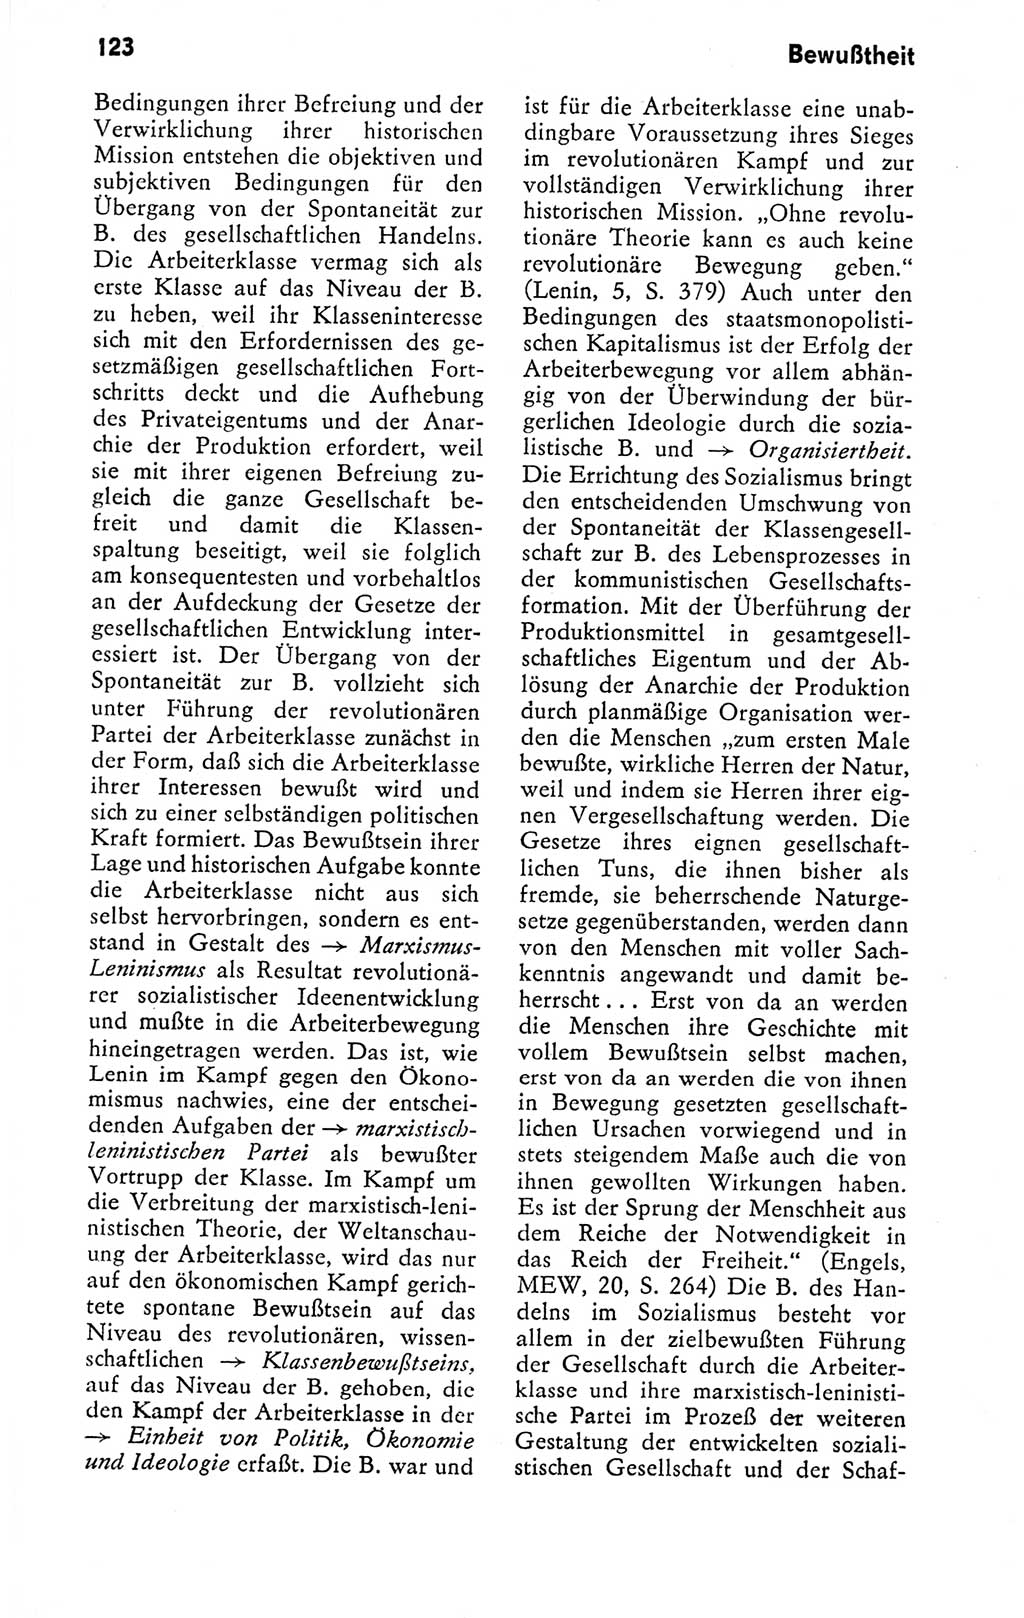 Kleines politisches Wörterbuch [Deutsche Demokratische Republik (DDR)] 1978, Seite 123 (Kl. pol. Wb. DDR 1978, S. 123)